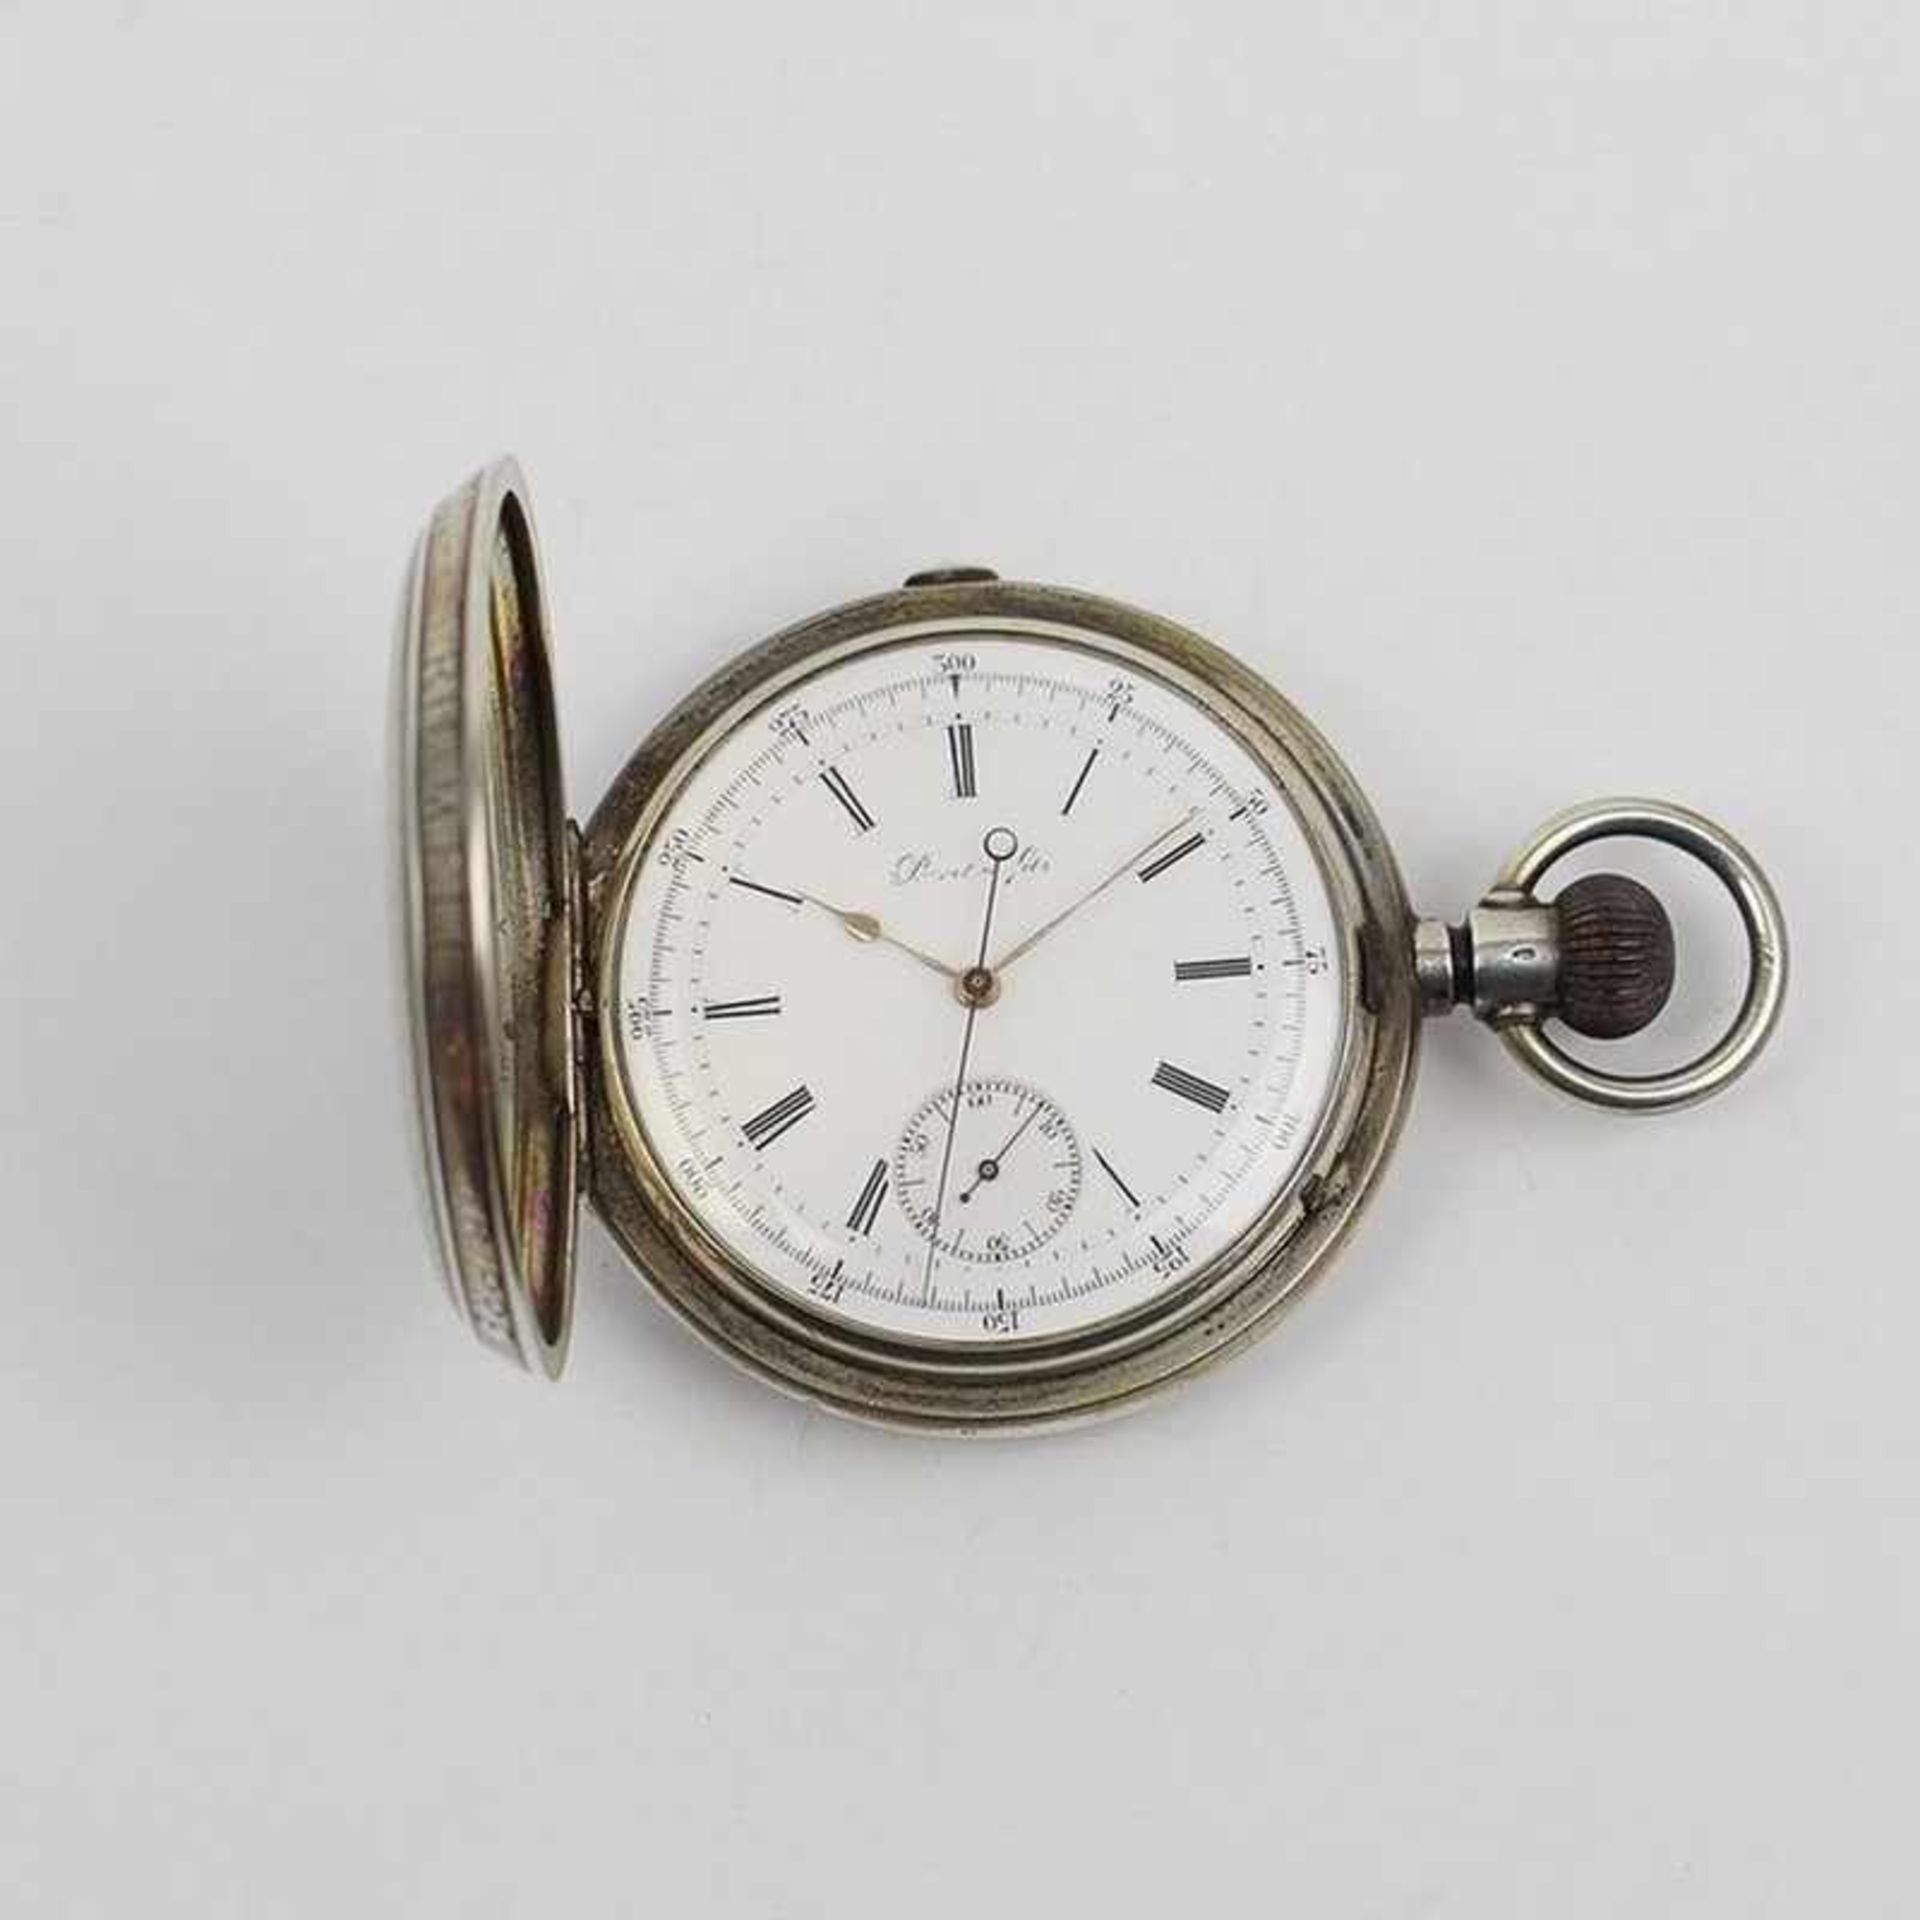 Herrentaschenuhr - Perret & Fils um 1880, Si 875, Swiss Watch, Savonette, Chronograph, rund, Dca.5,